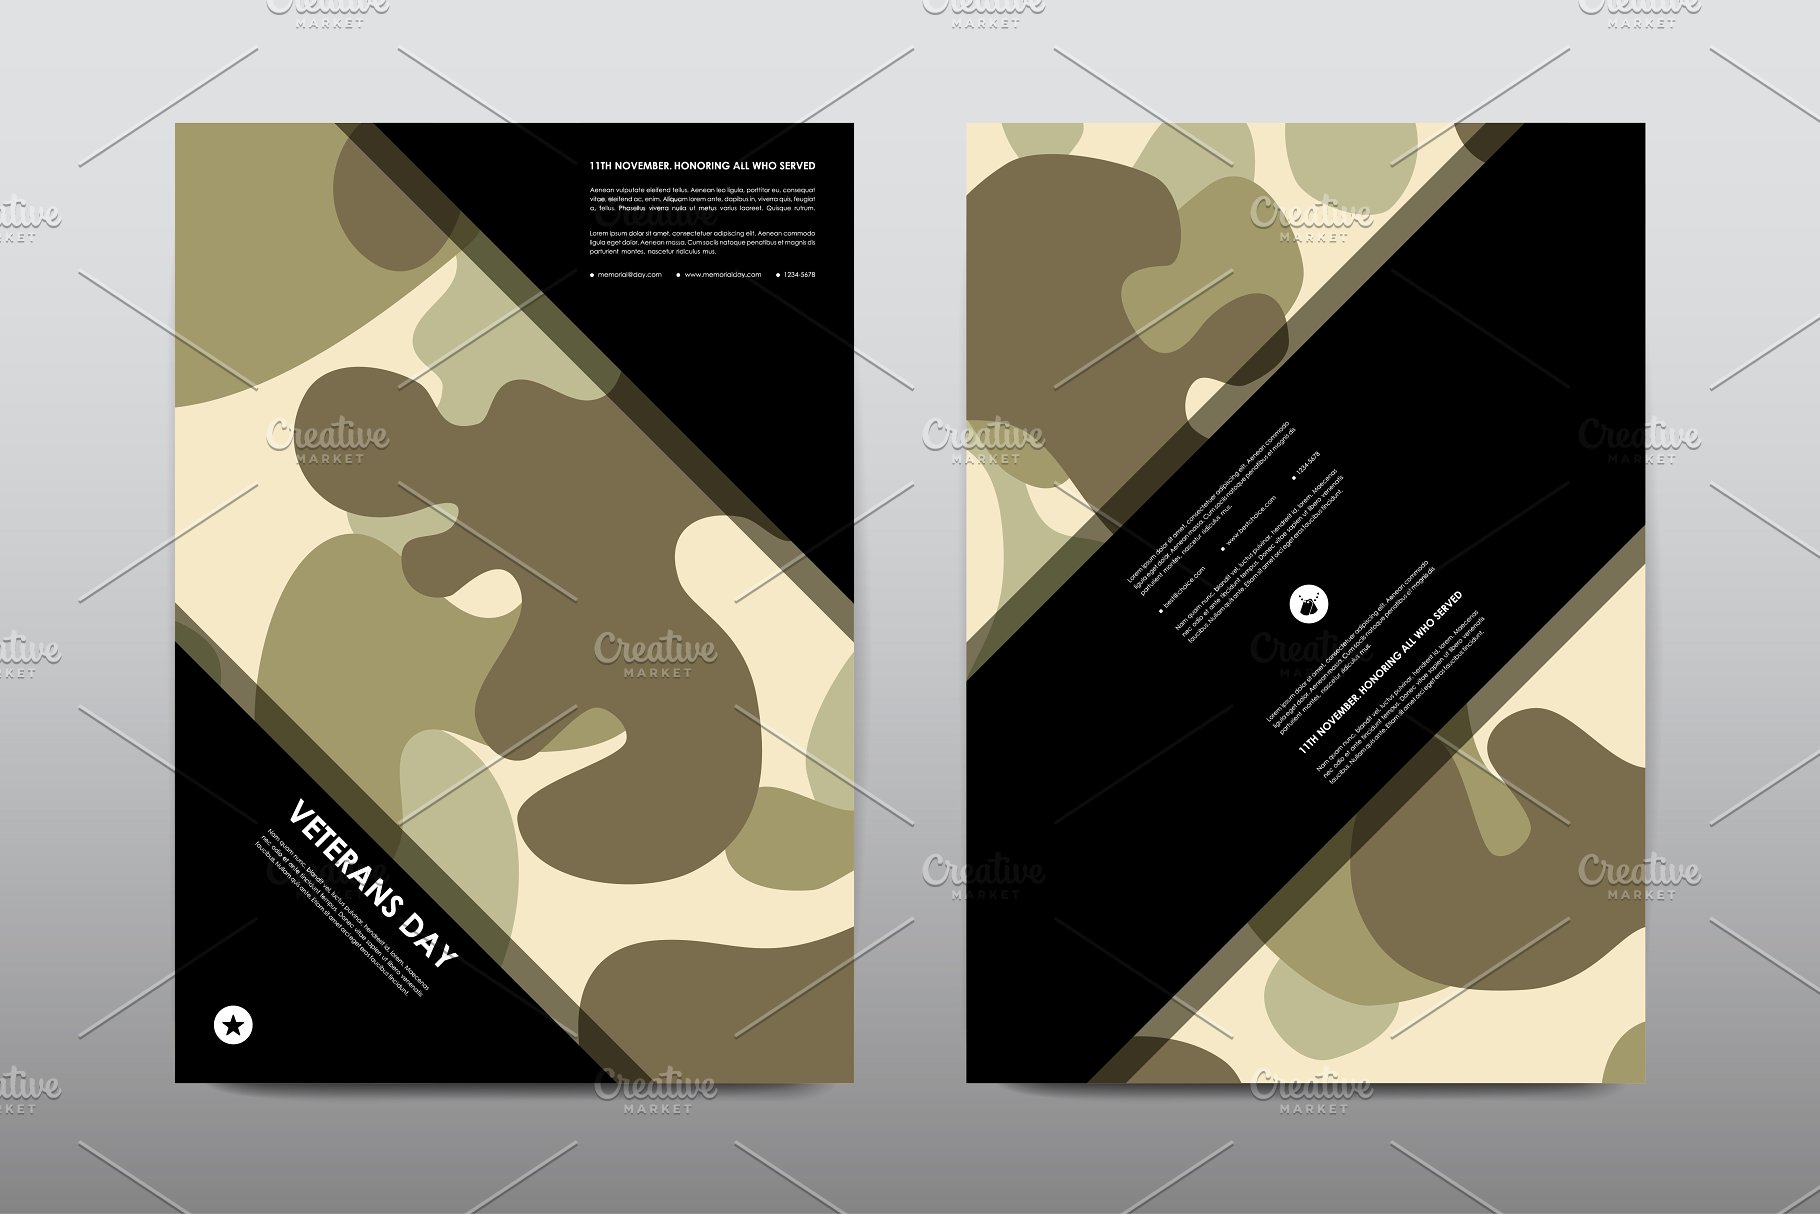 40+老兵节军人宣传小册模板 Veteran’s Day Brochures Bundle插图(6)